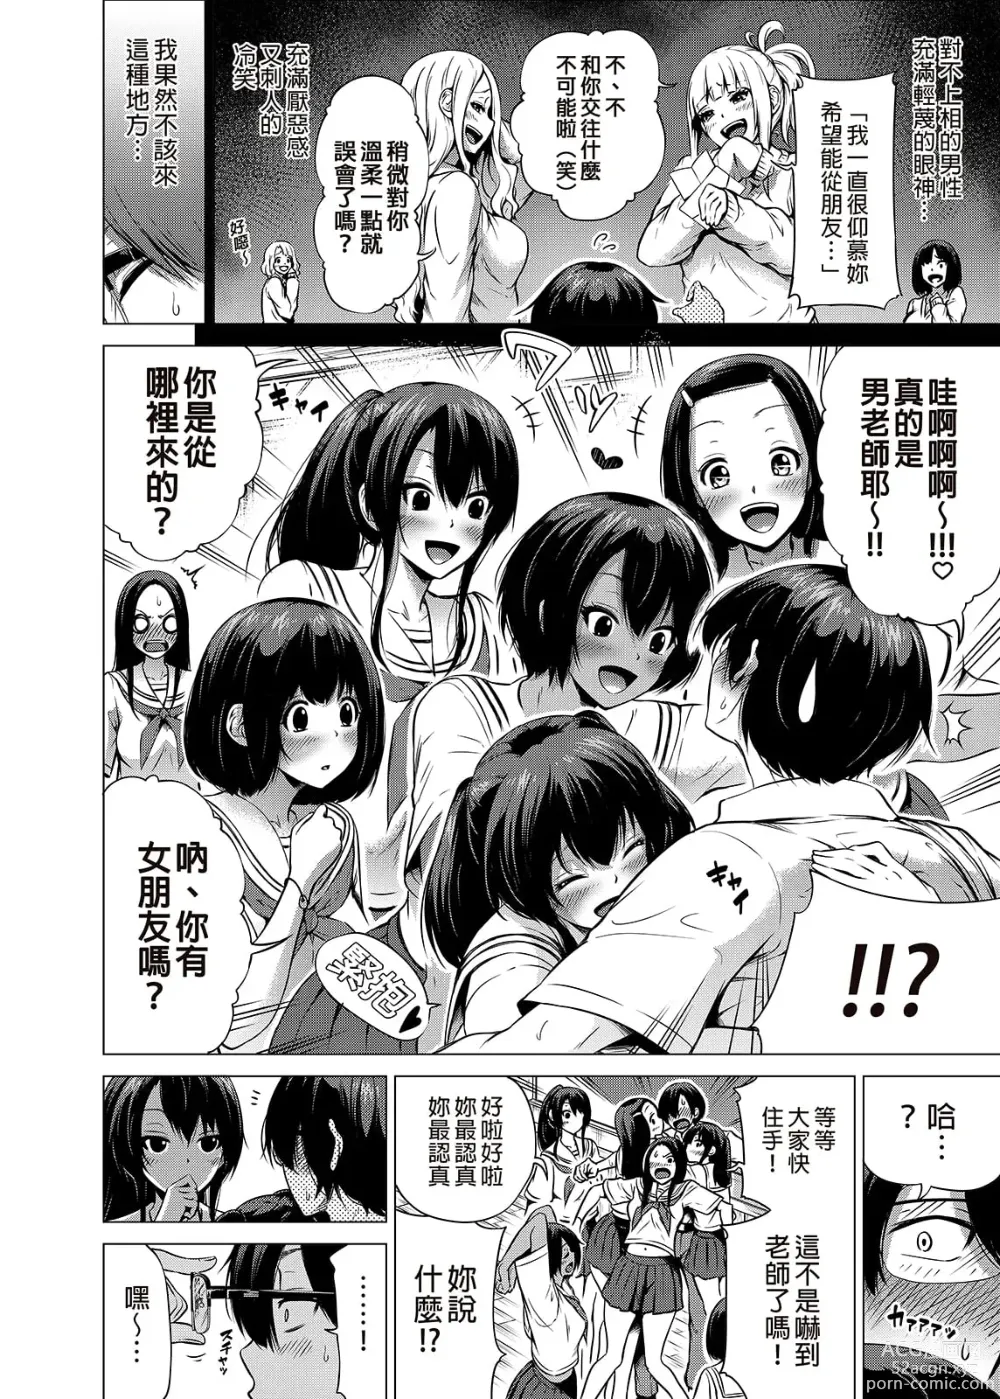 Page 13 of manga nanaka no rakuen1